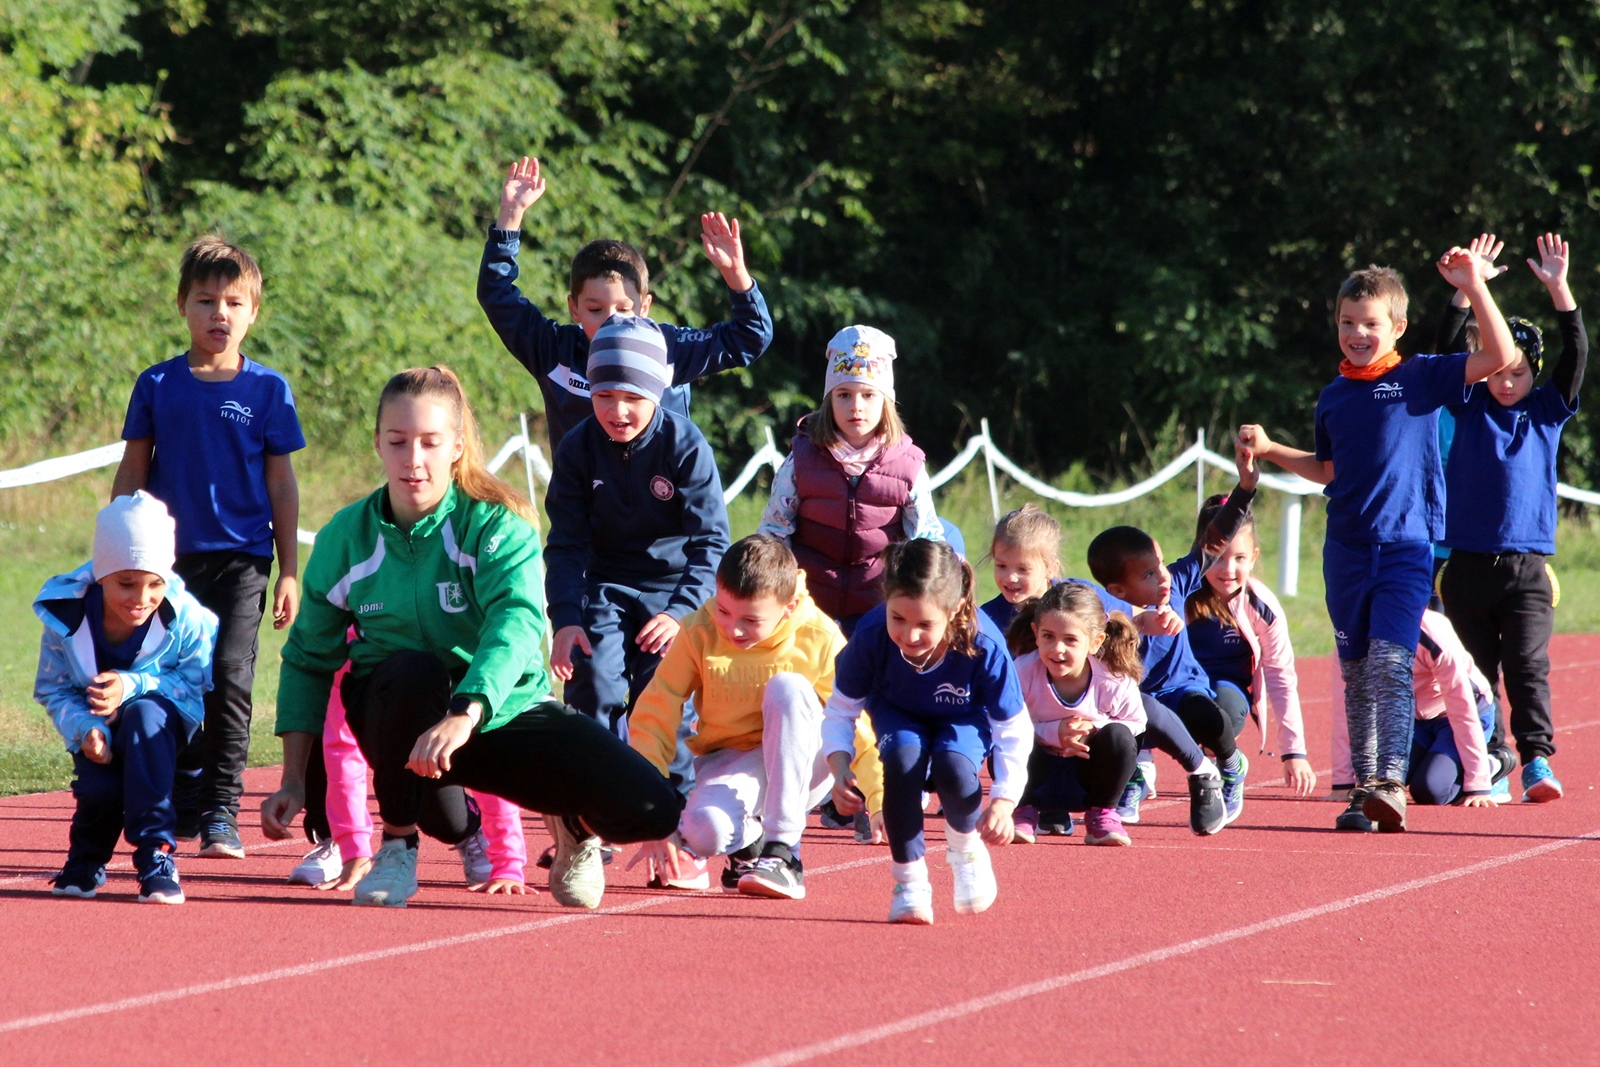 A MATE egyedülálló kezdeményezéssel támogatja az általános iskolai sportéletet